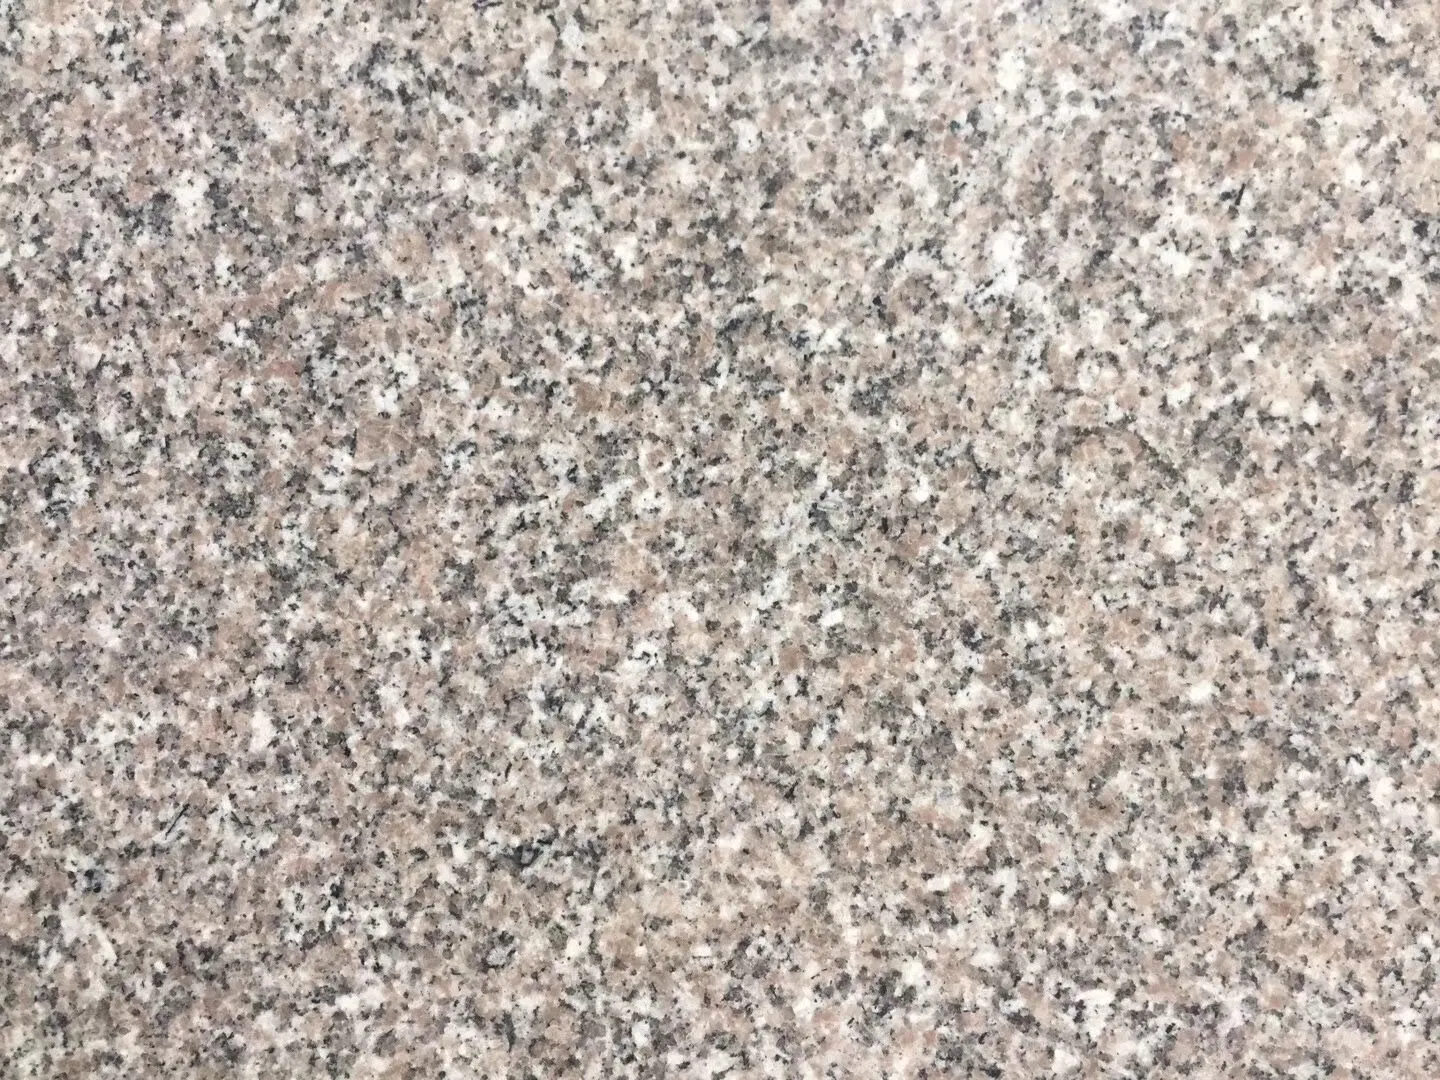 Natural Stone G617 China Granite Big Half Small Random Slabs for Floor Wall